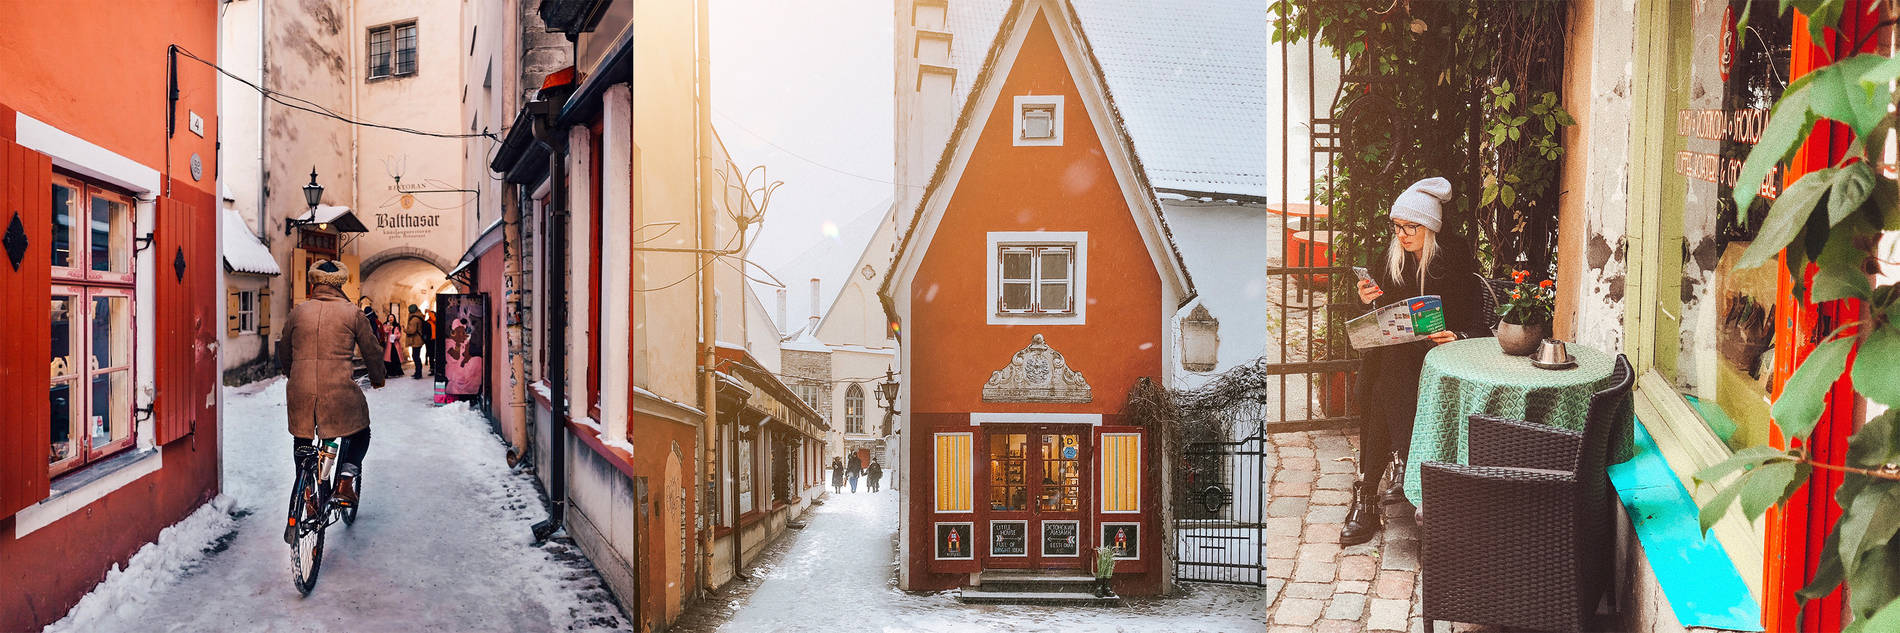 Saiakang passage in Tallinn, Estonia Photo: 